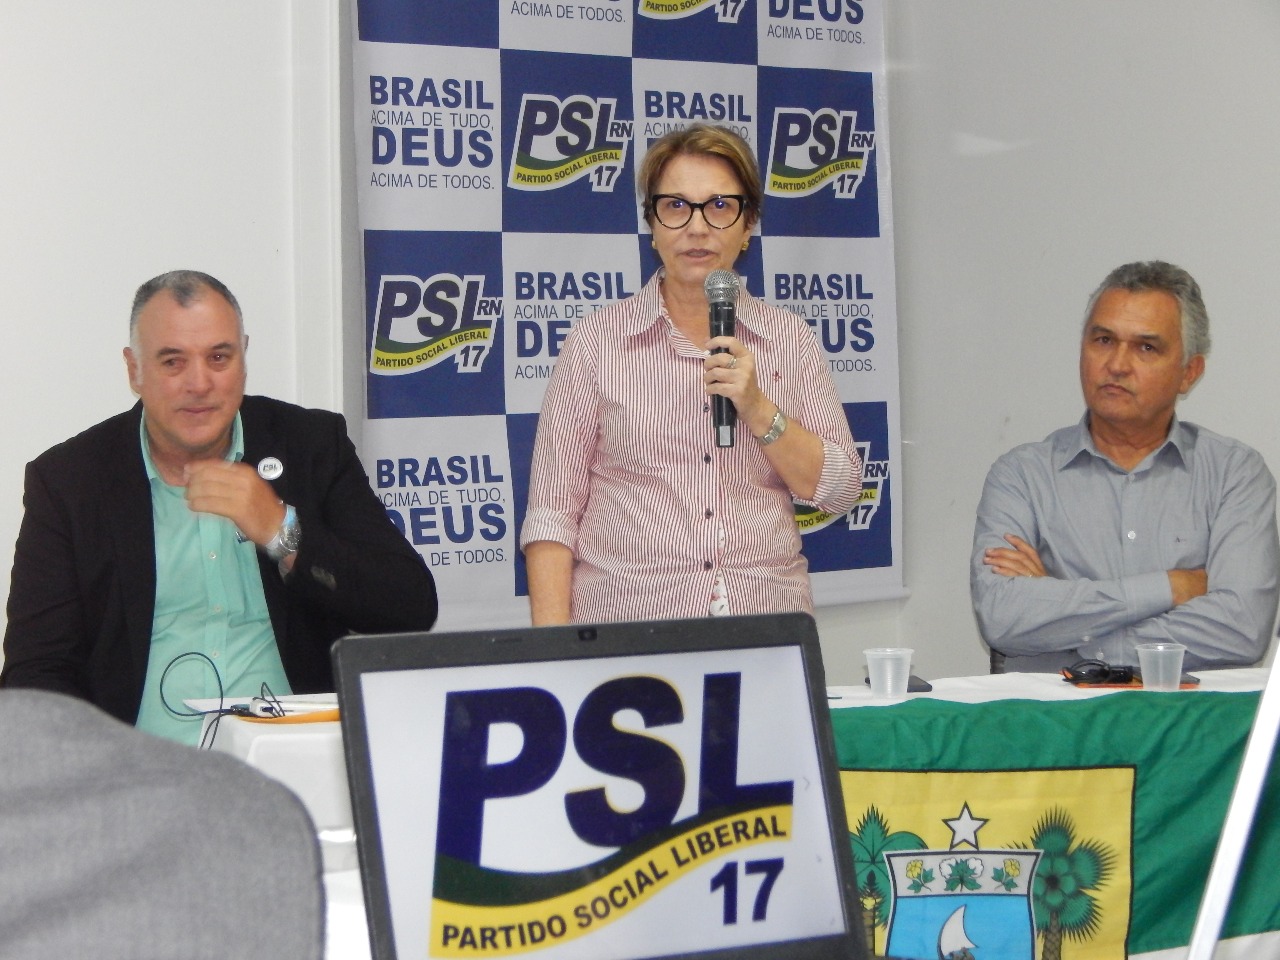 PSL potiguar mostra força e RN entra na rota dos ministros no início do governo